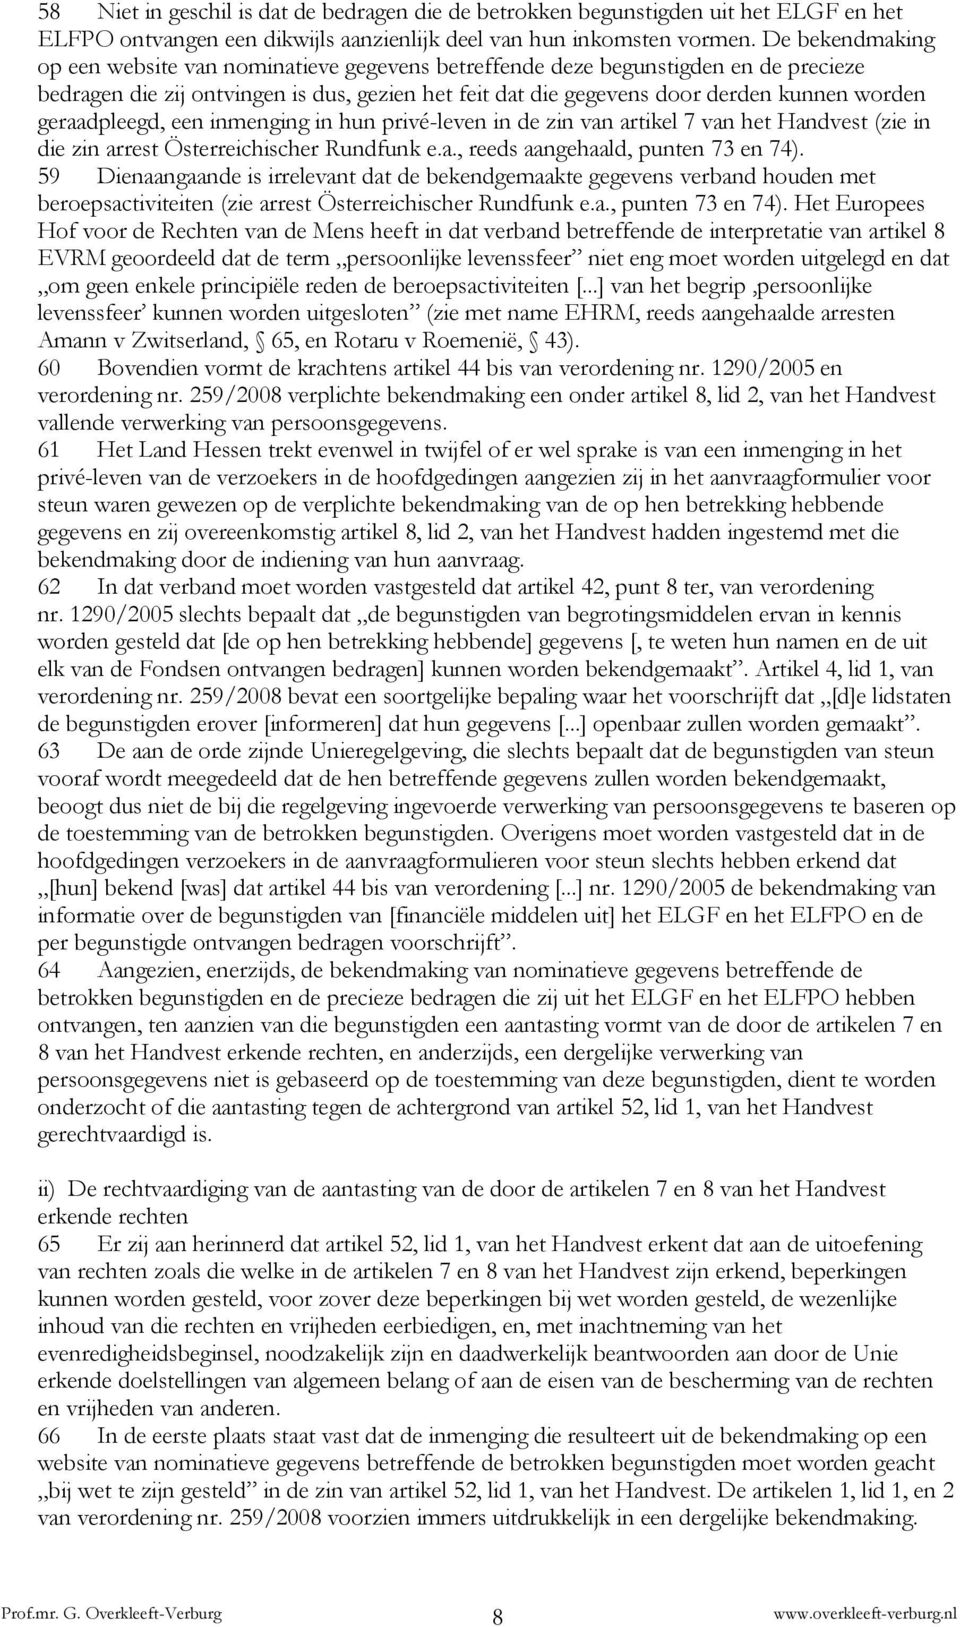 geraadpleegd, een inmenging in hun privé-leven in de zin van artikel 7 van het Handvest (zie in die zin arrest Österreichischer Rundfunk e.a., reeds aangehaald, punten 73 en 74).